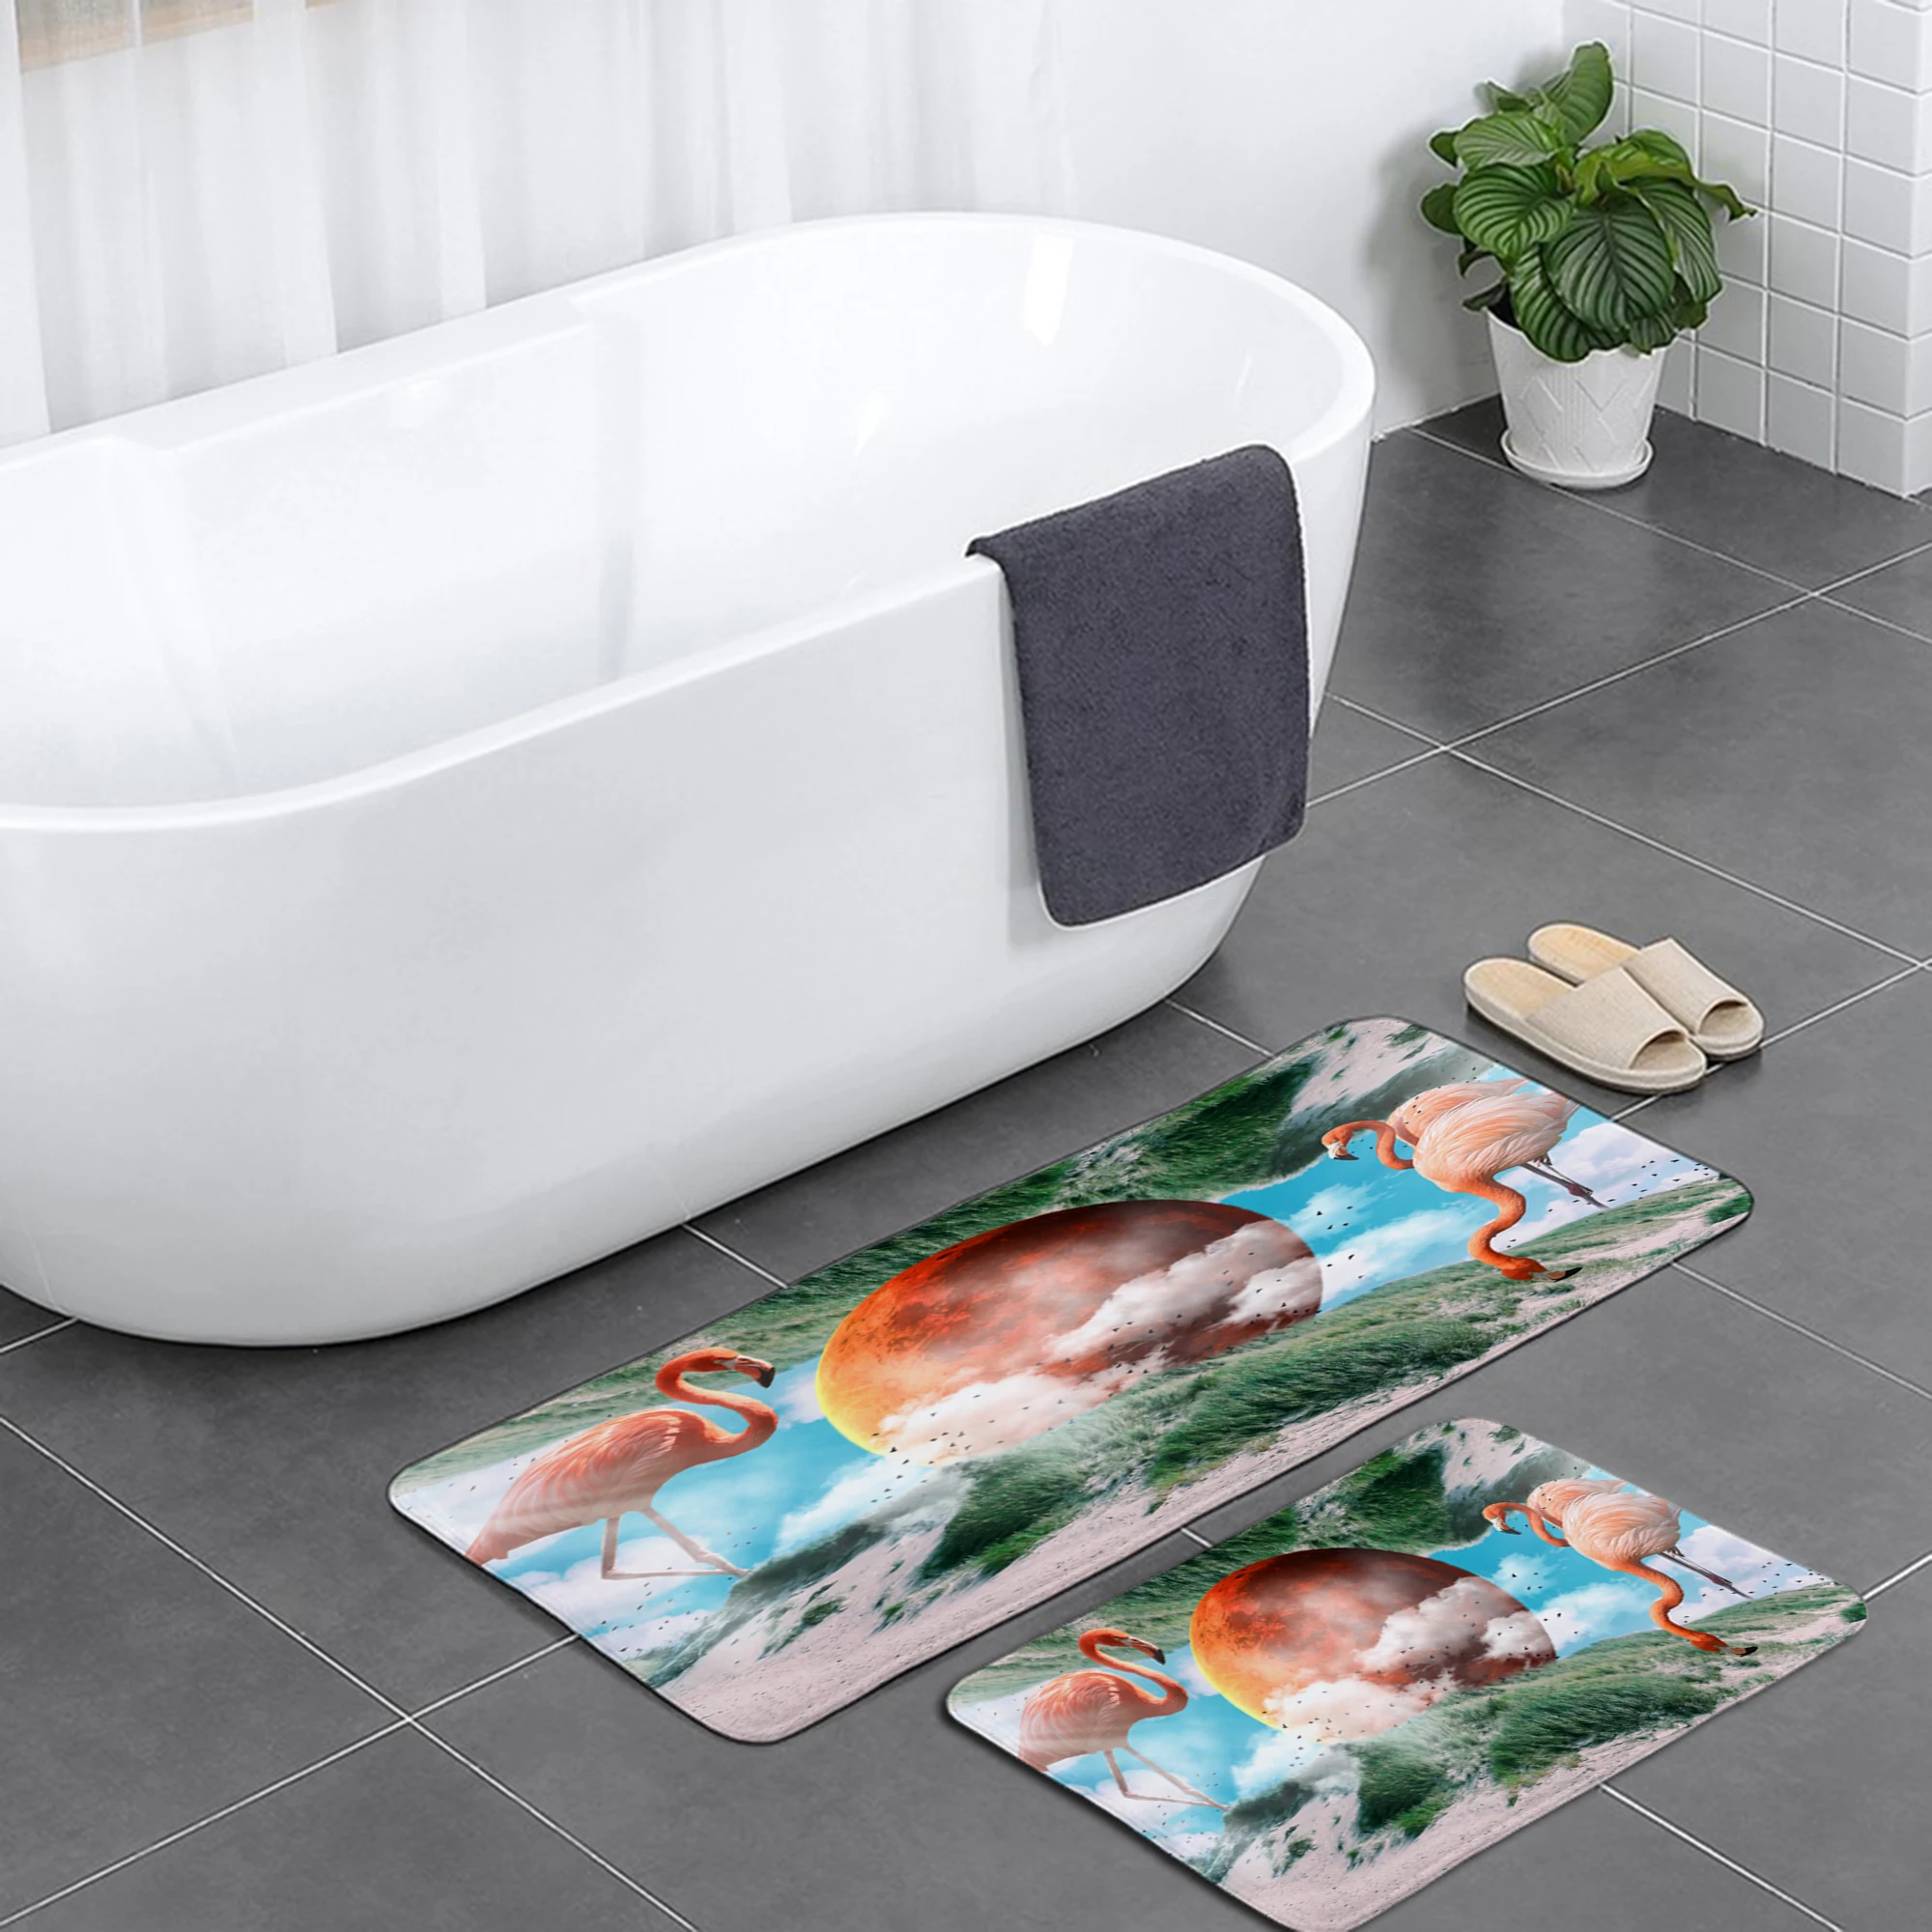 

Flamingo Camper Carpet Bathroom Entrance Doormat Bath Indoor Floor Rugs Absorbent Mat Anti-slip Kitchen Rug